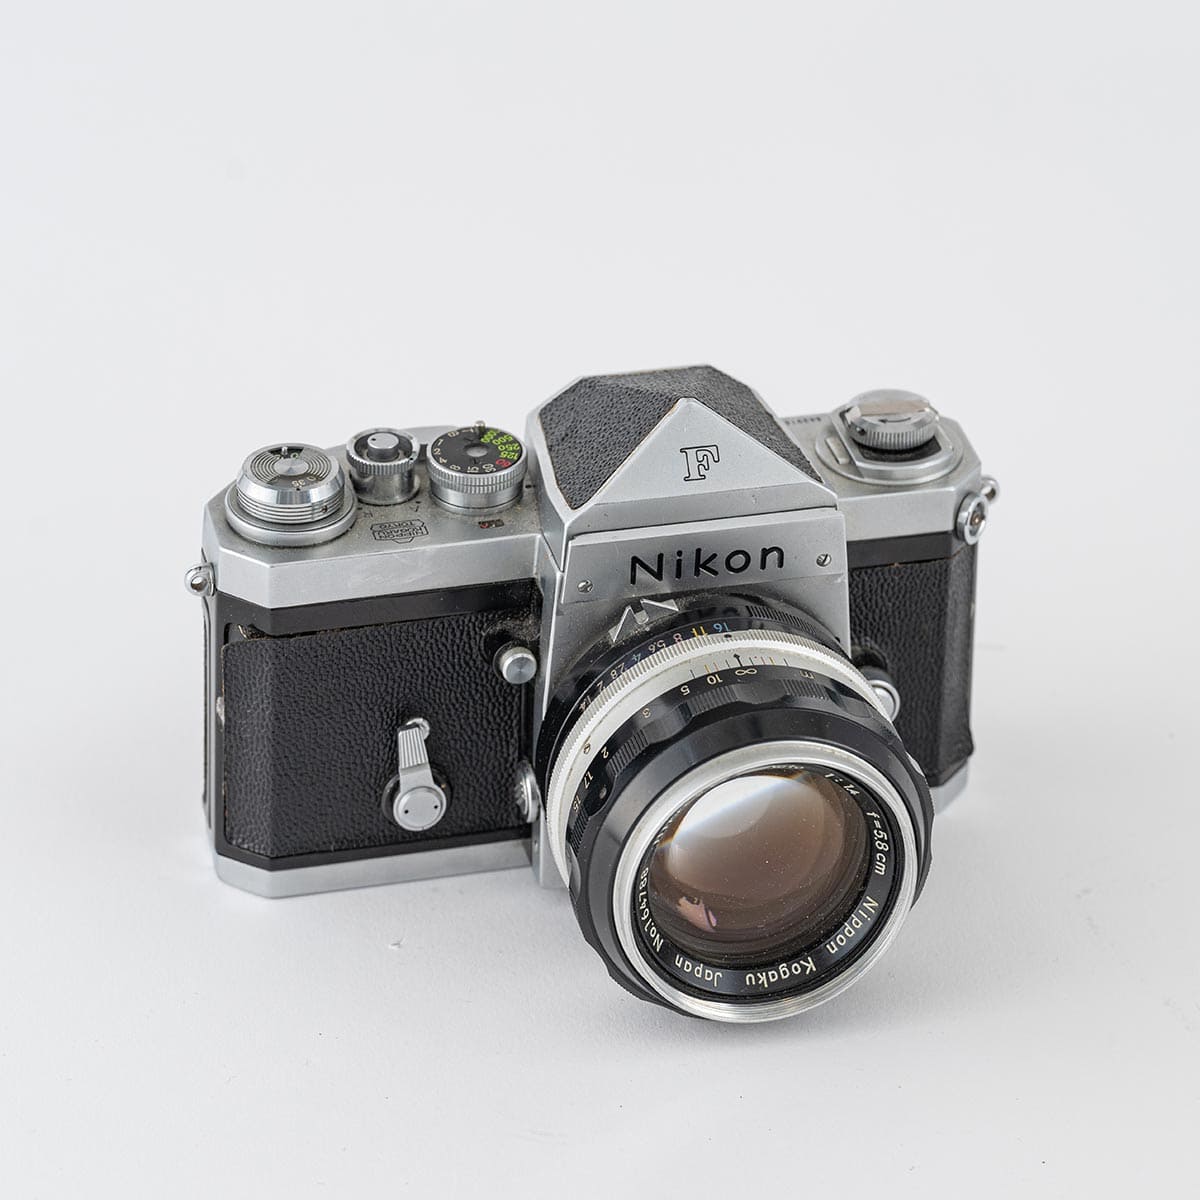 ニコマートと同時代の上位機種「Nikon F」。お父さんから引き継いだニコマートは、イタリア取材の時に「カメラバッグだけでなくクルマごと」盗まれてしまったそう。